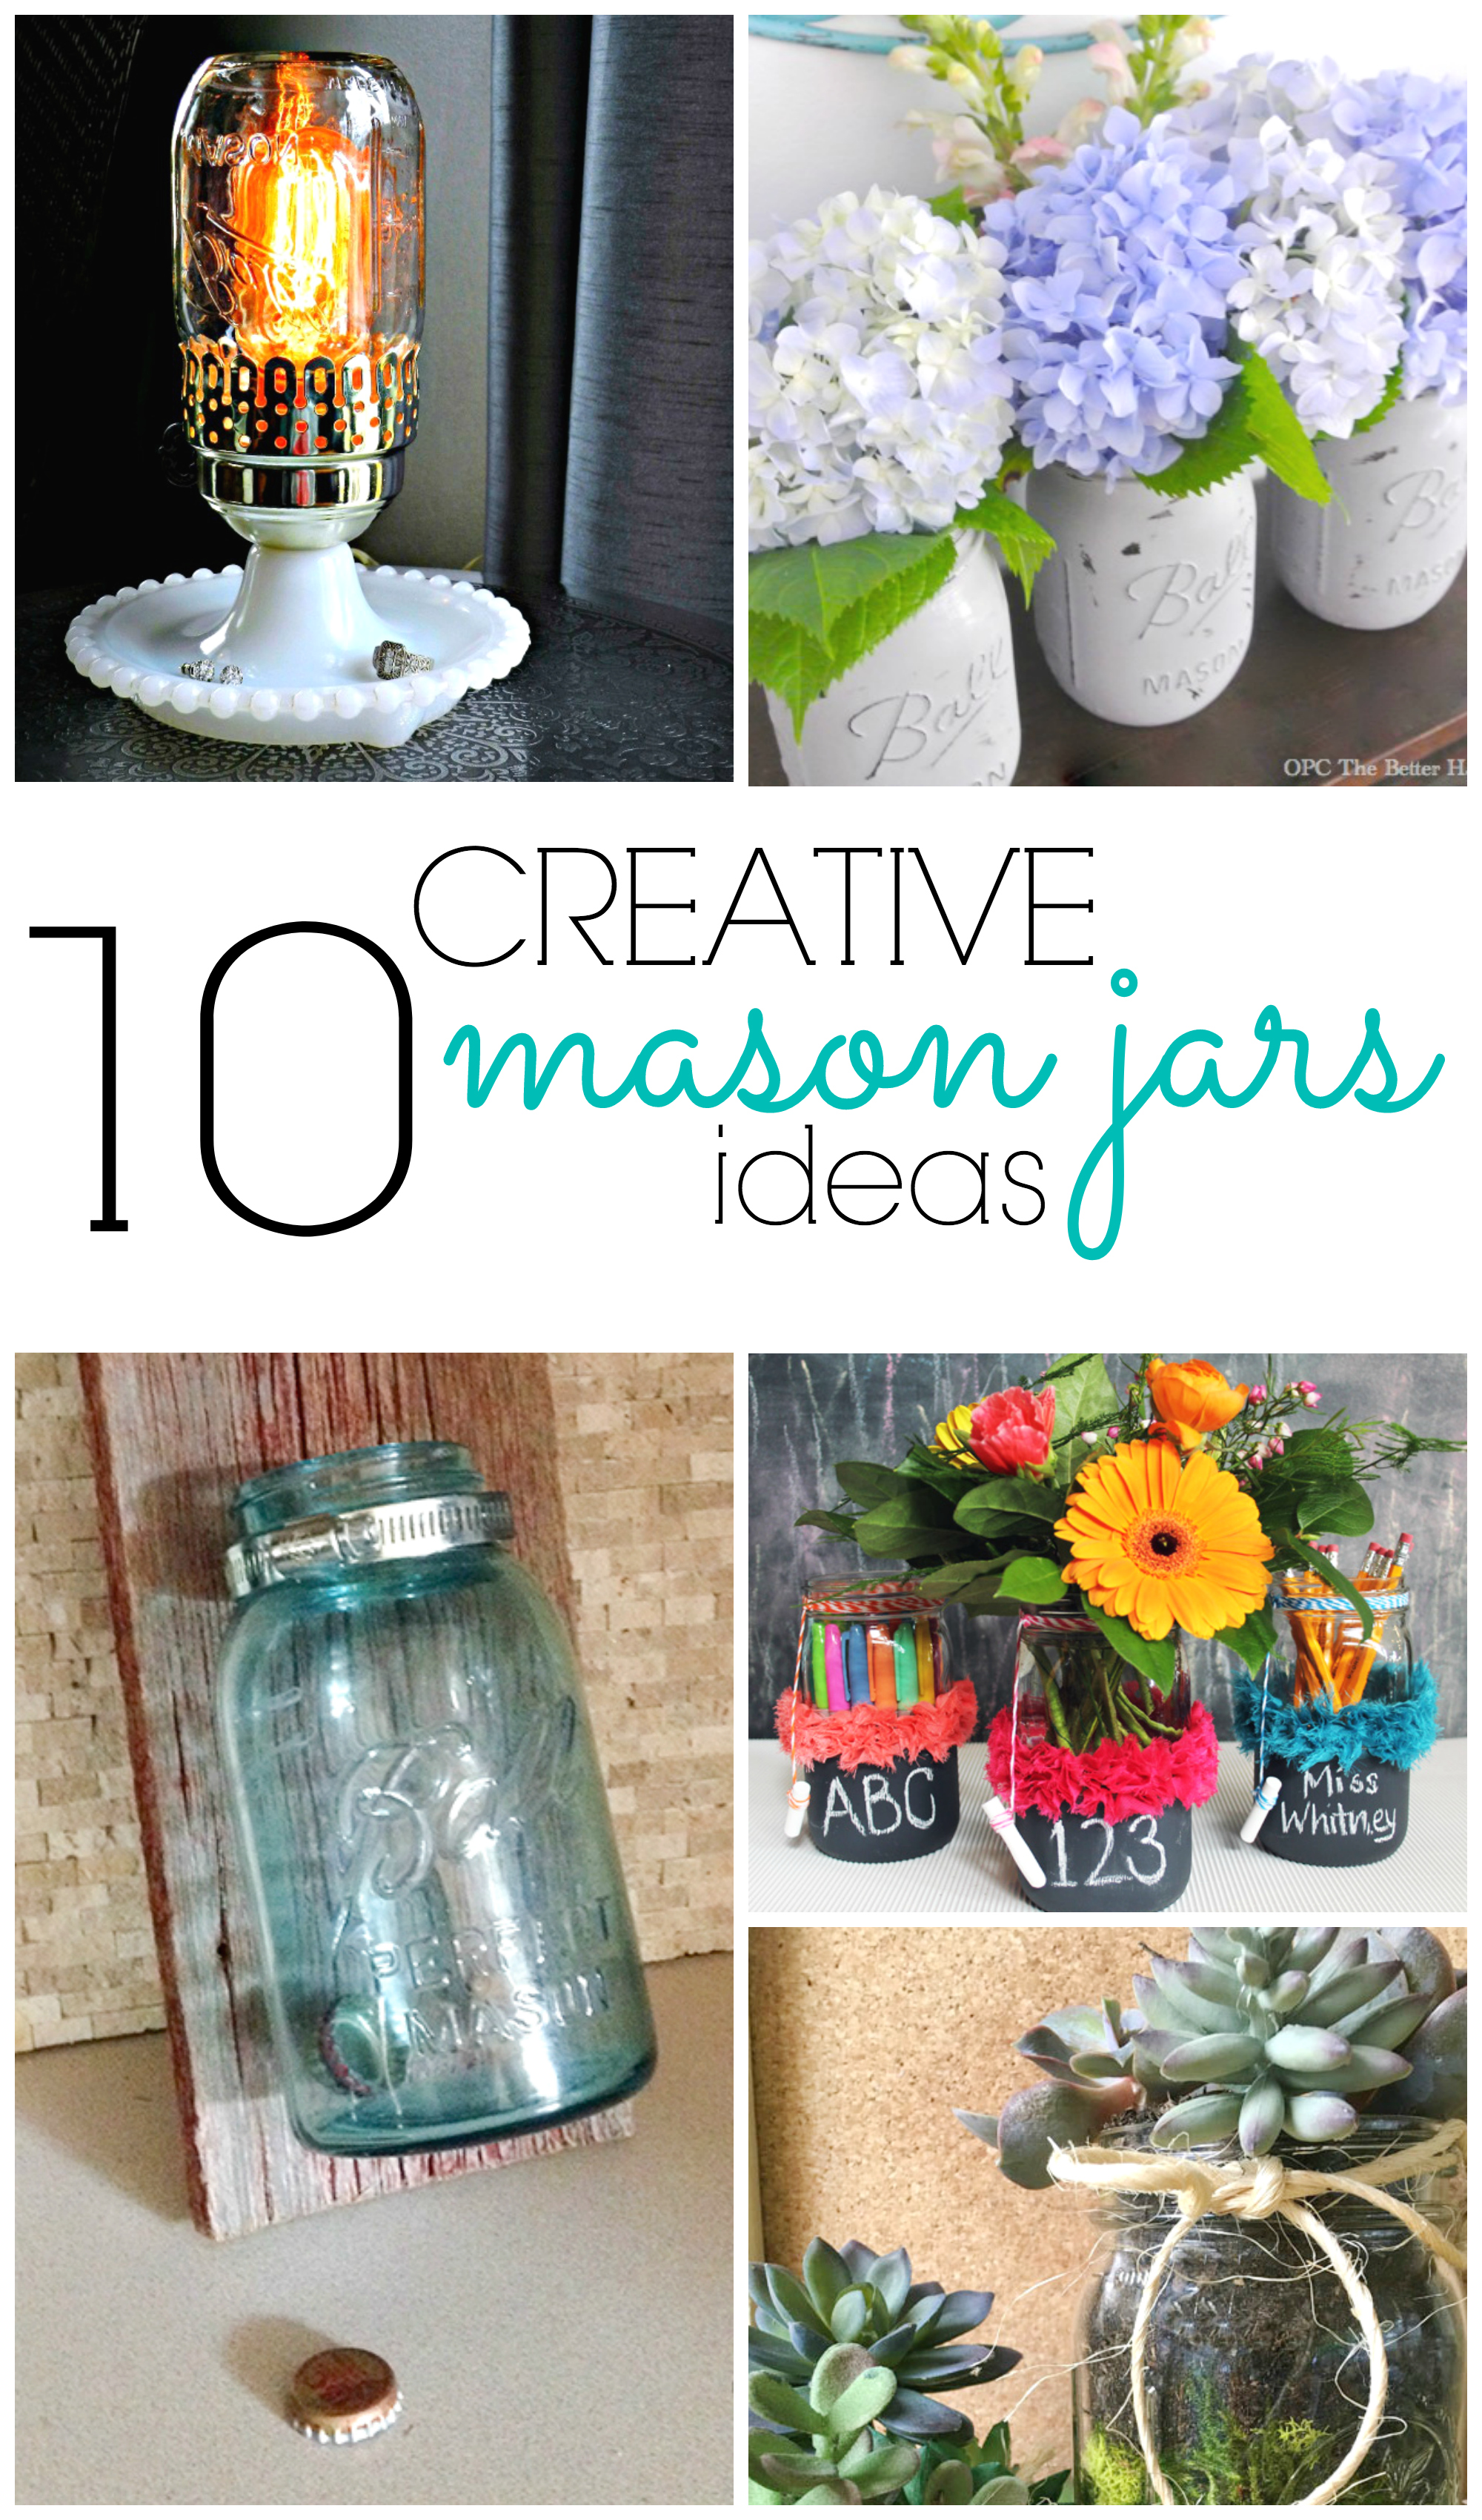 Mason jar craft: 10 Mason jar ideas